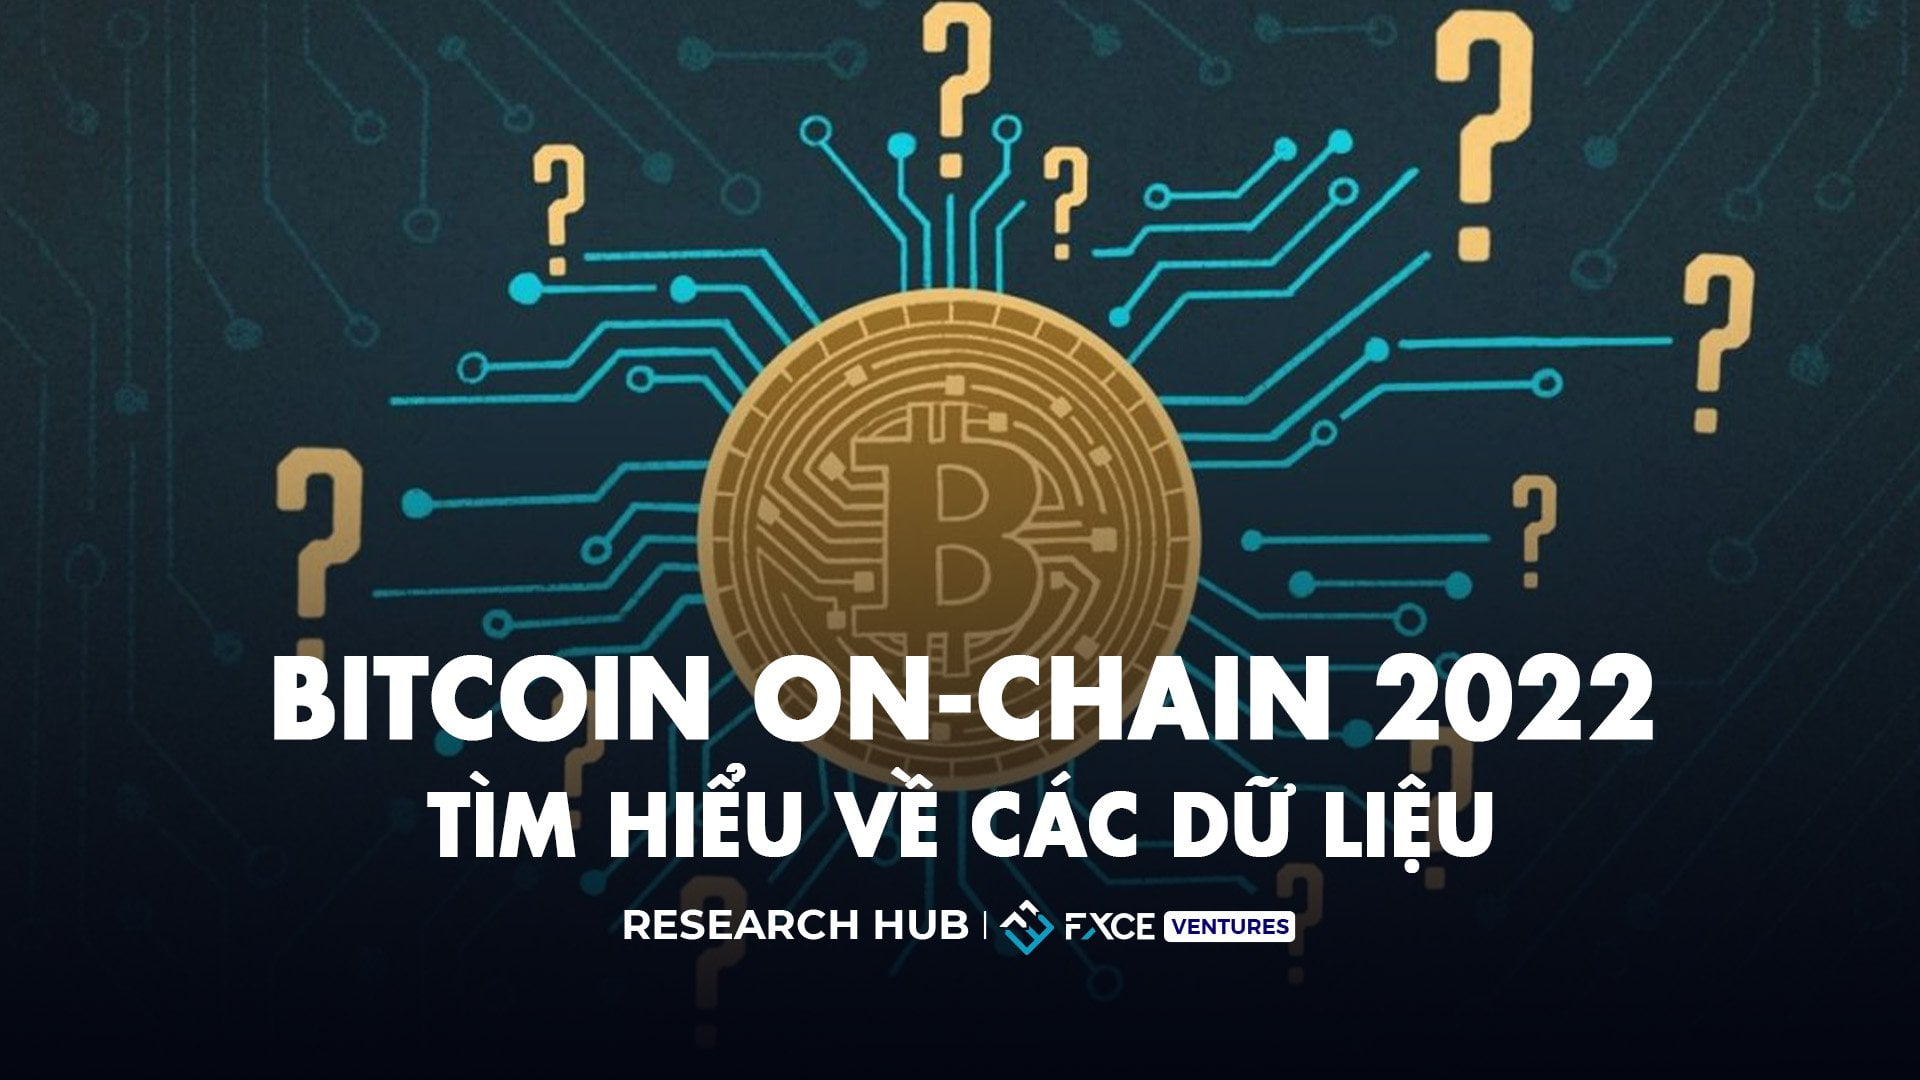  Tìm hiểu về các dữ liệu Bitcoin on-chain 2022